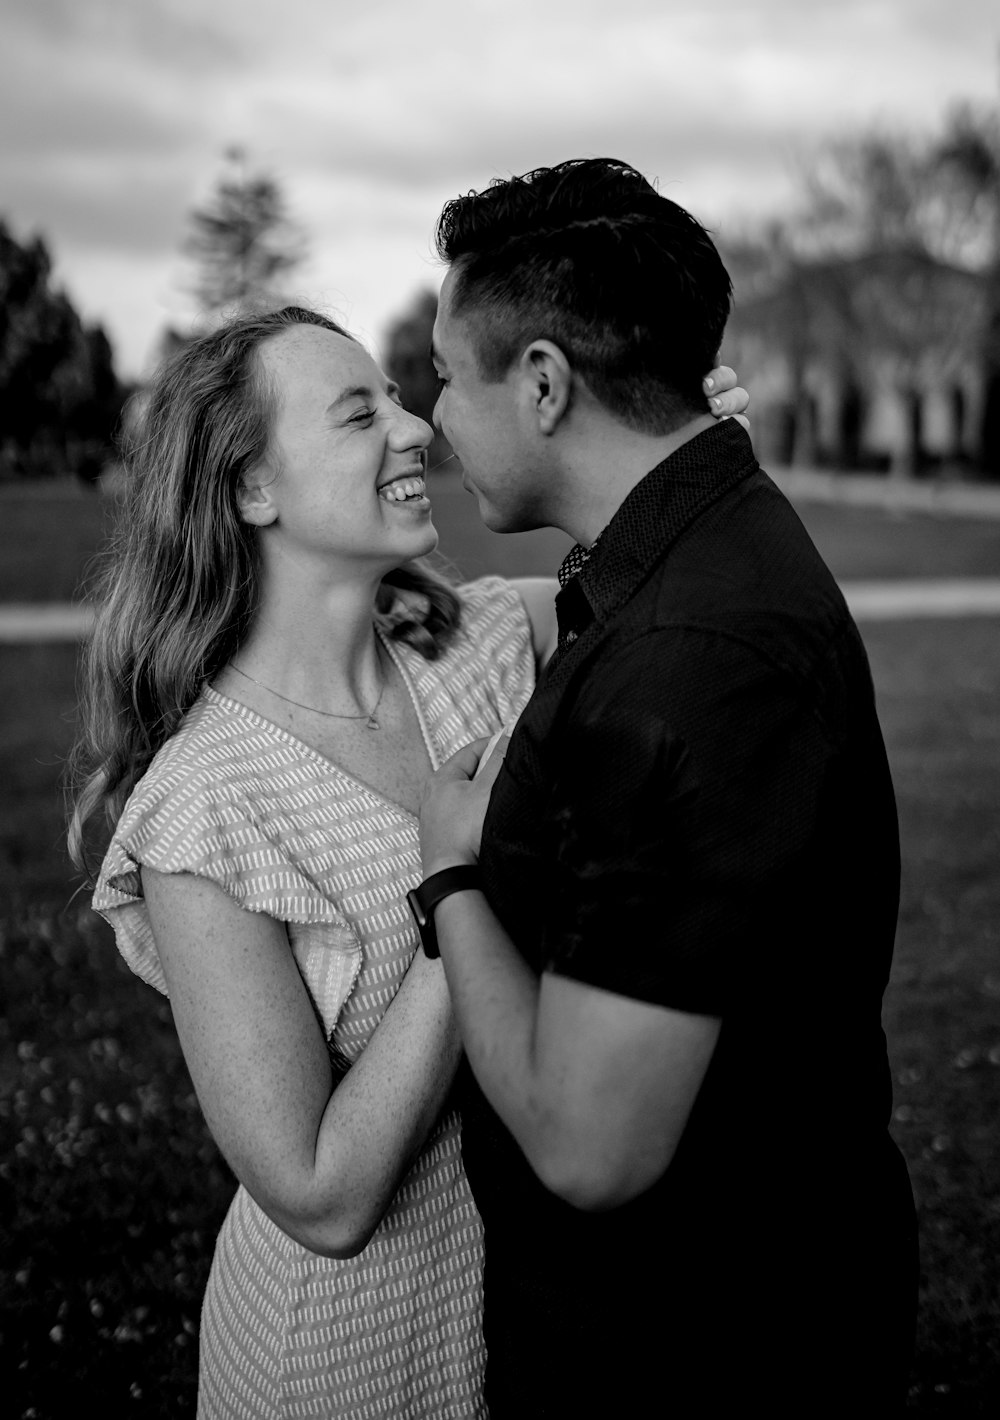 女性の頬にキスする男性の写真 Unsplashで見つけるアメリカ合衆国の無料写真